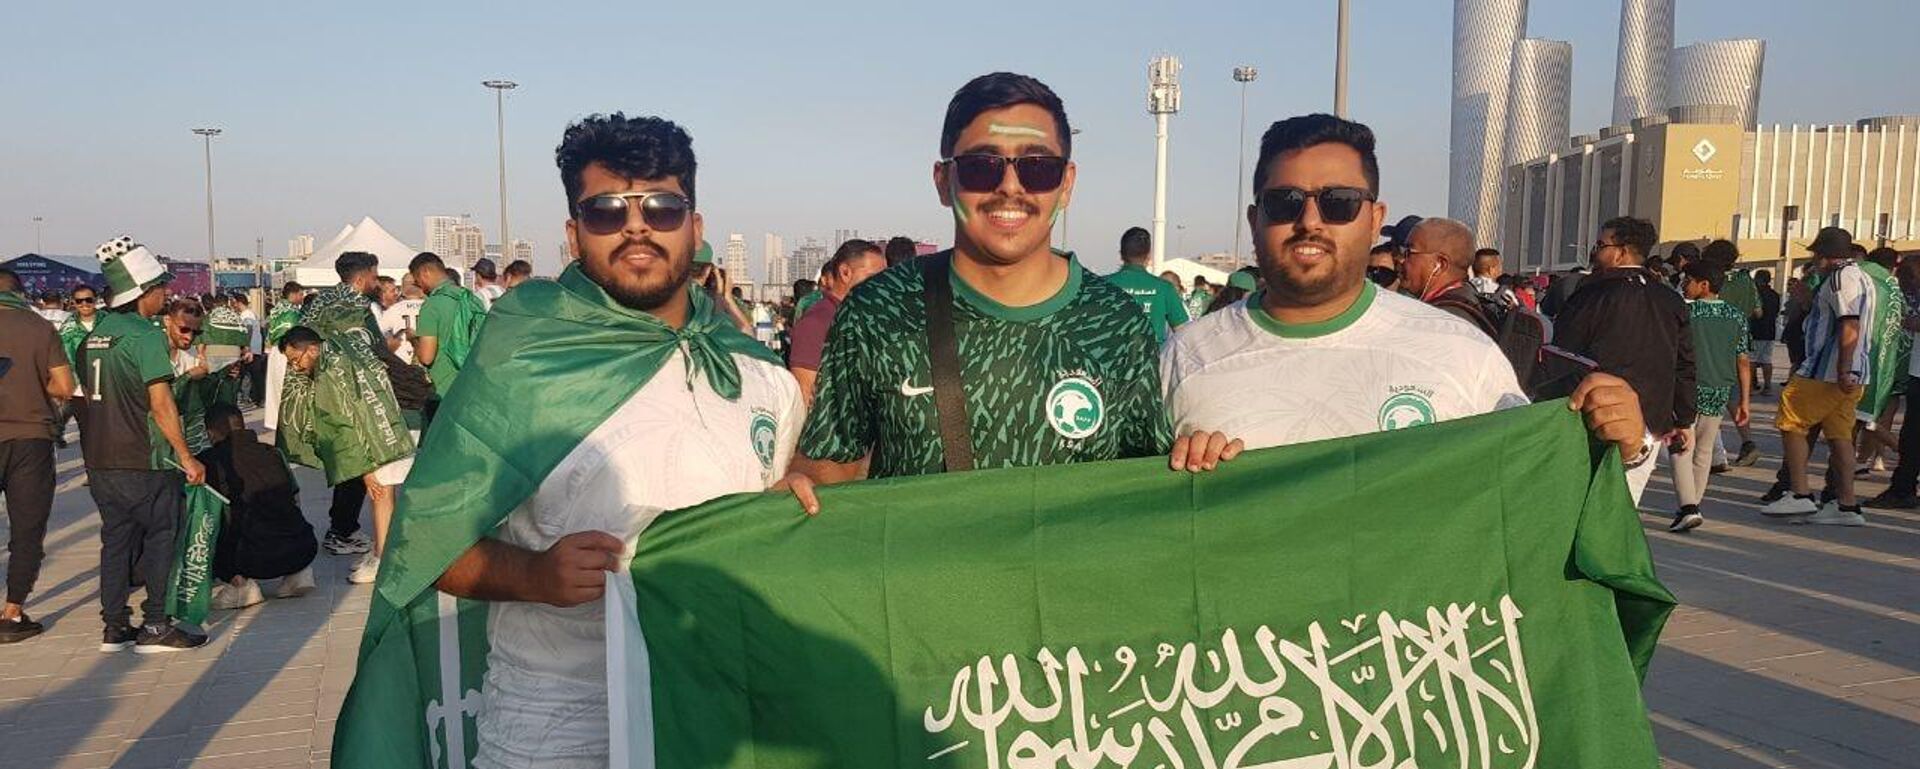 Torcedores da Arábia Saudita parecem felizes após vitória de sua seleção contra a Argentina - Sputnik Brasil, 1920, 22.11.2022